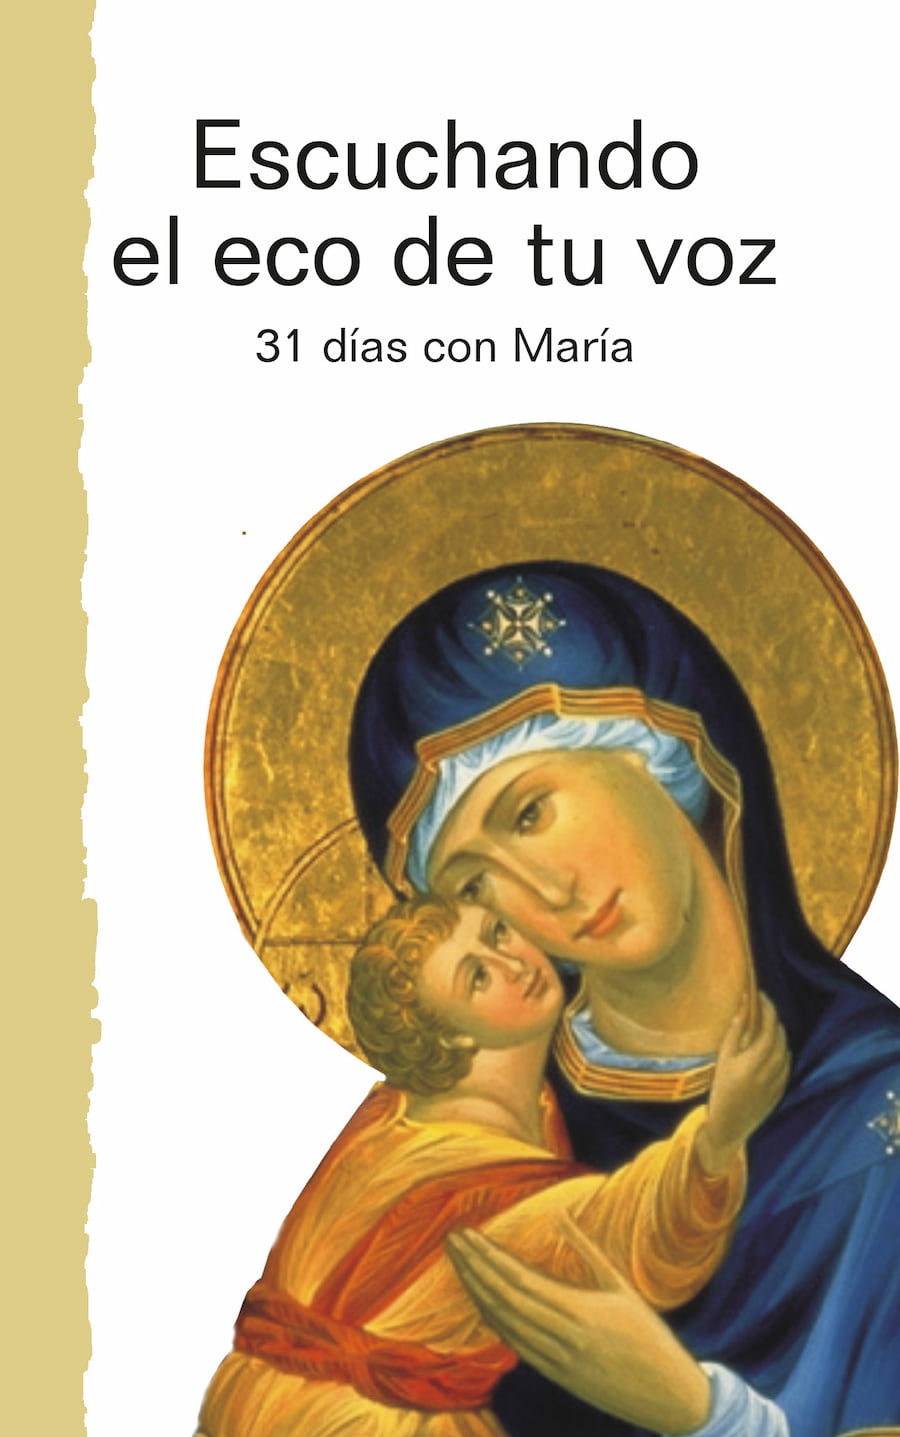 ESCUCHANDO EL ECO DE TU VOZ. 31 días con María. Con textos del papa Francisco.